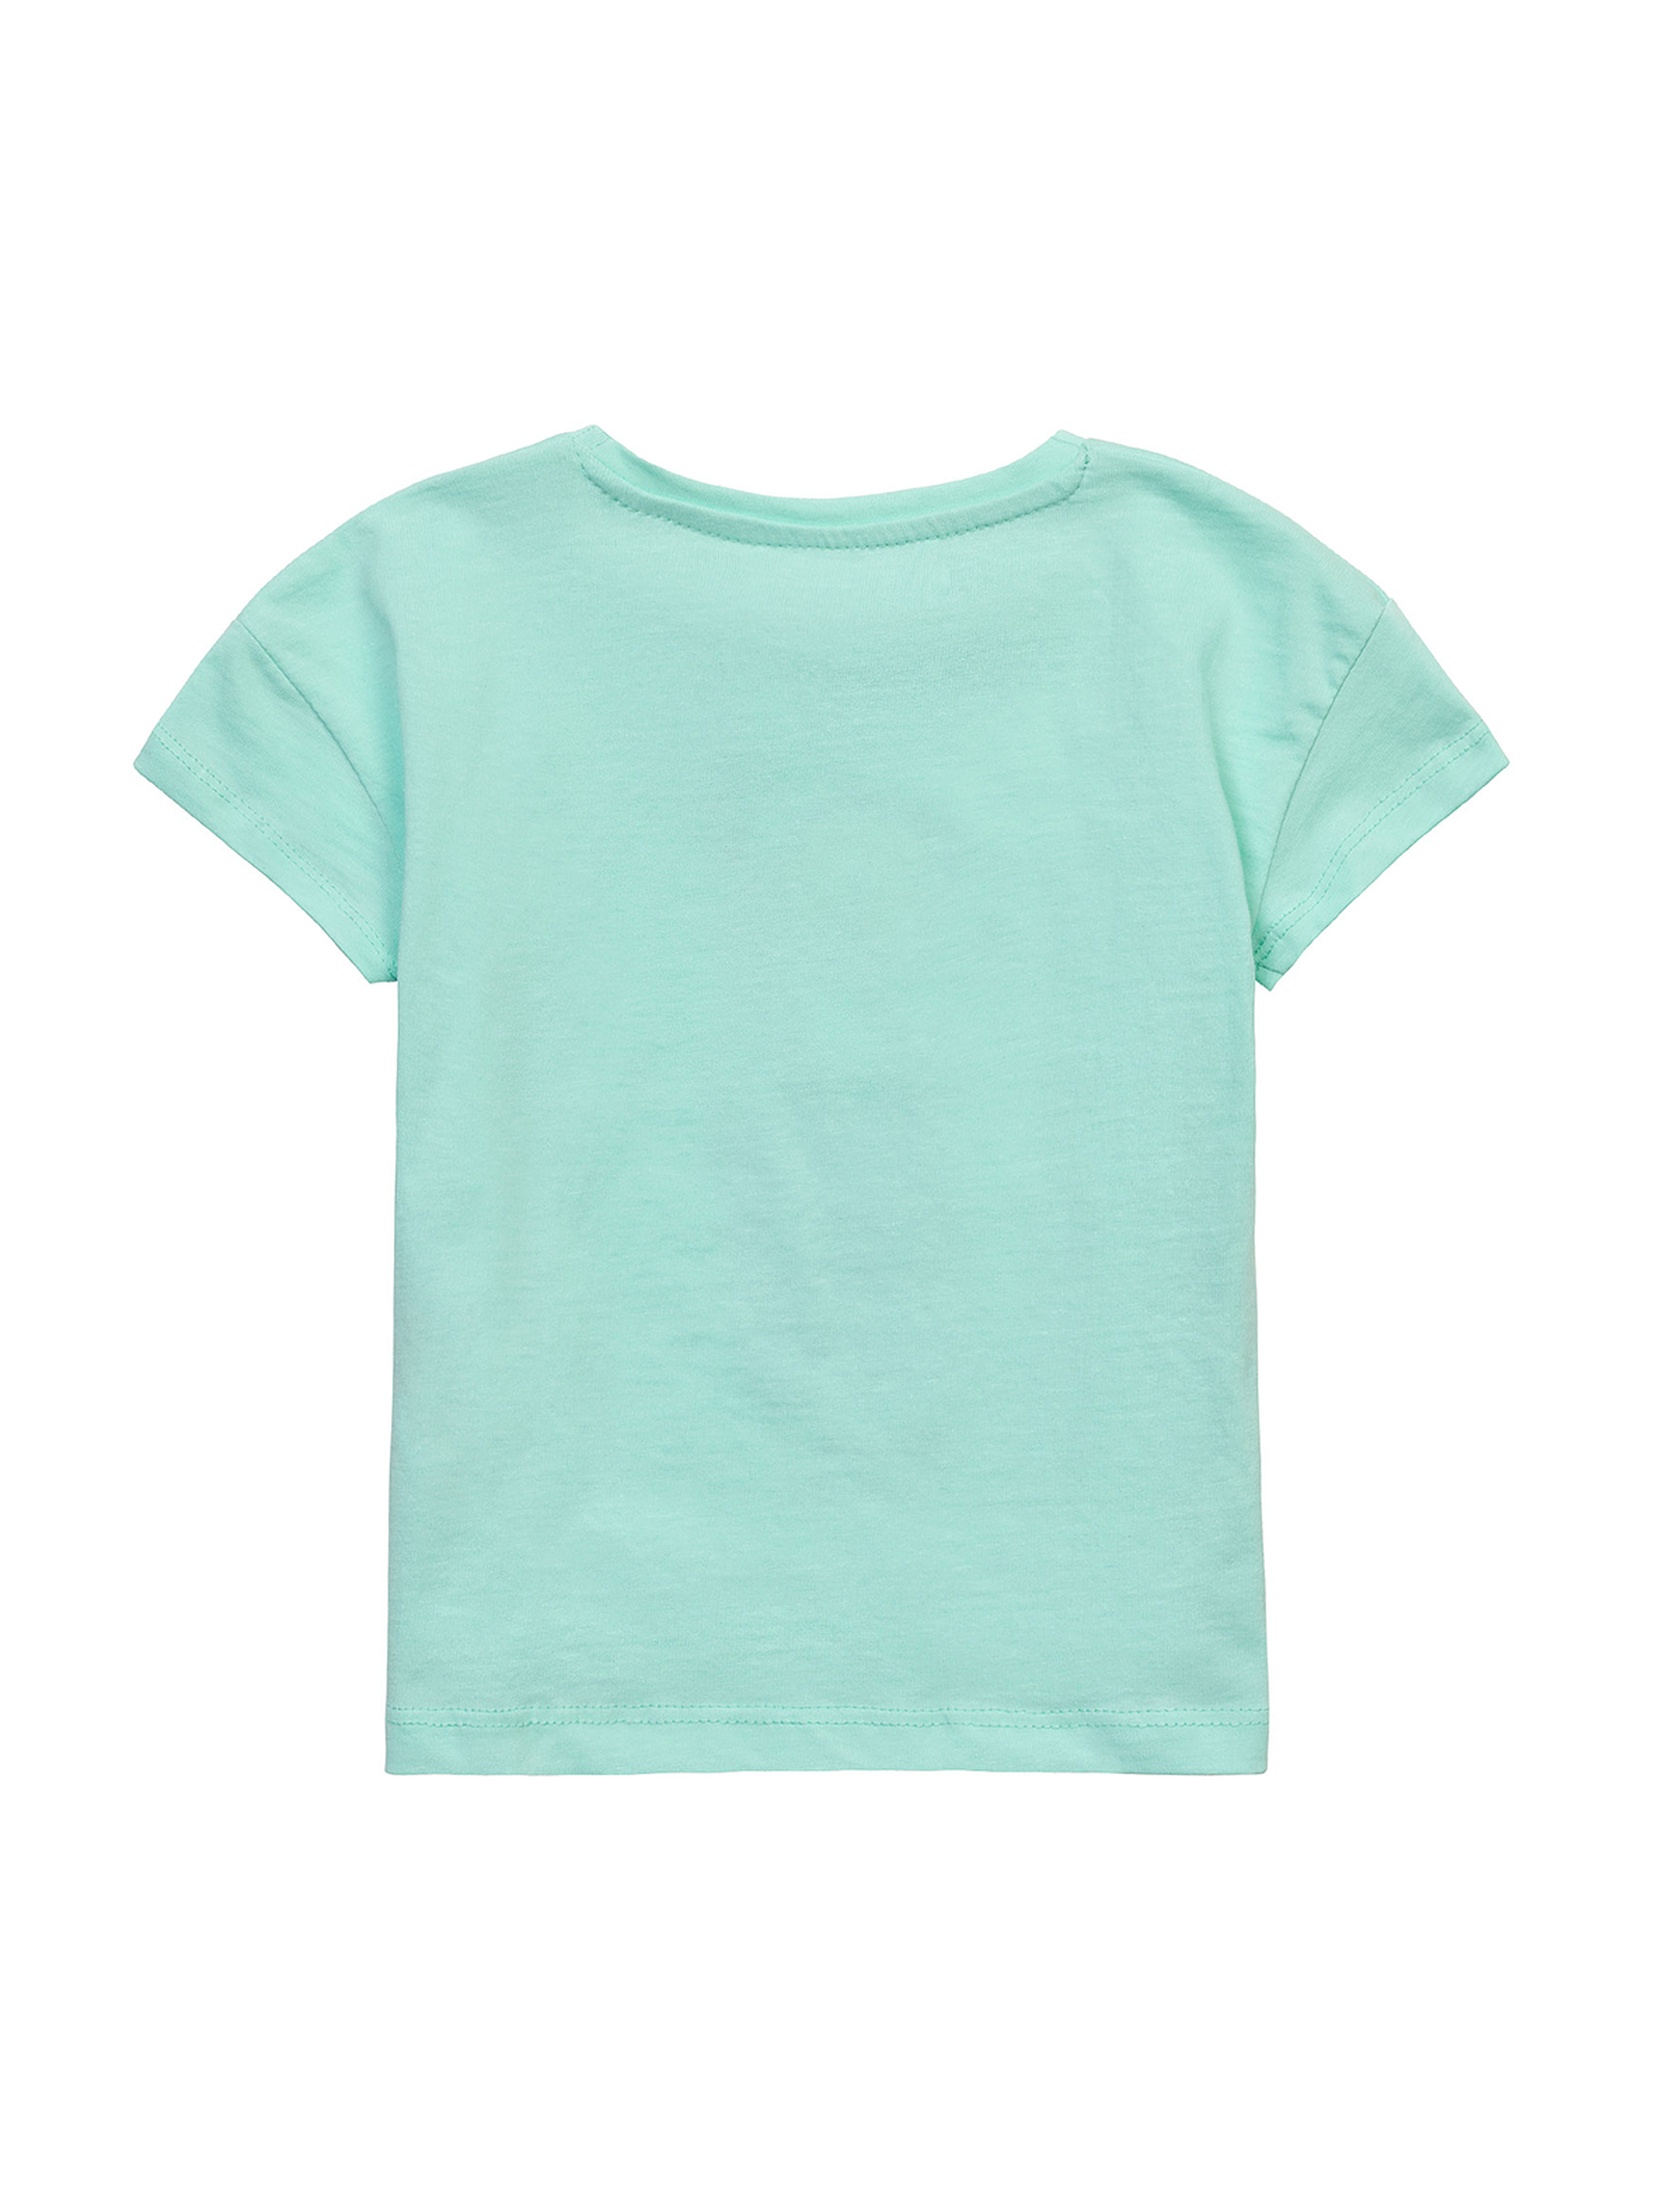 Błękitny t-shirt niemowlęcy bawełniany z nadrukiem